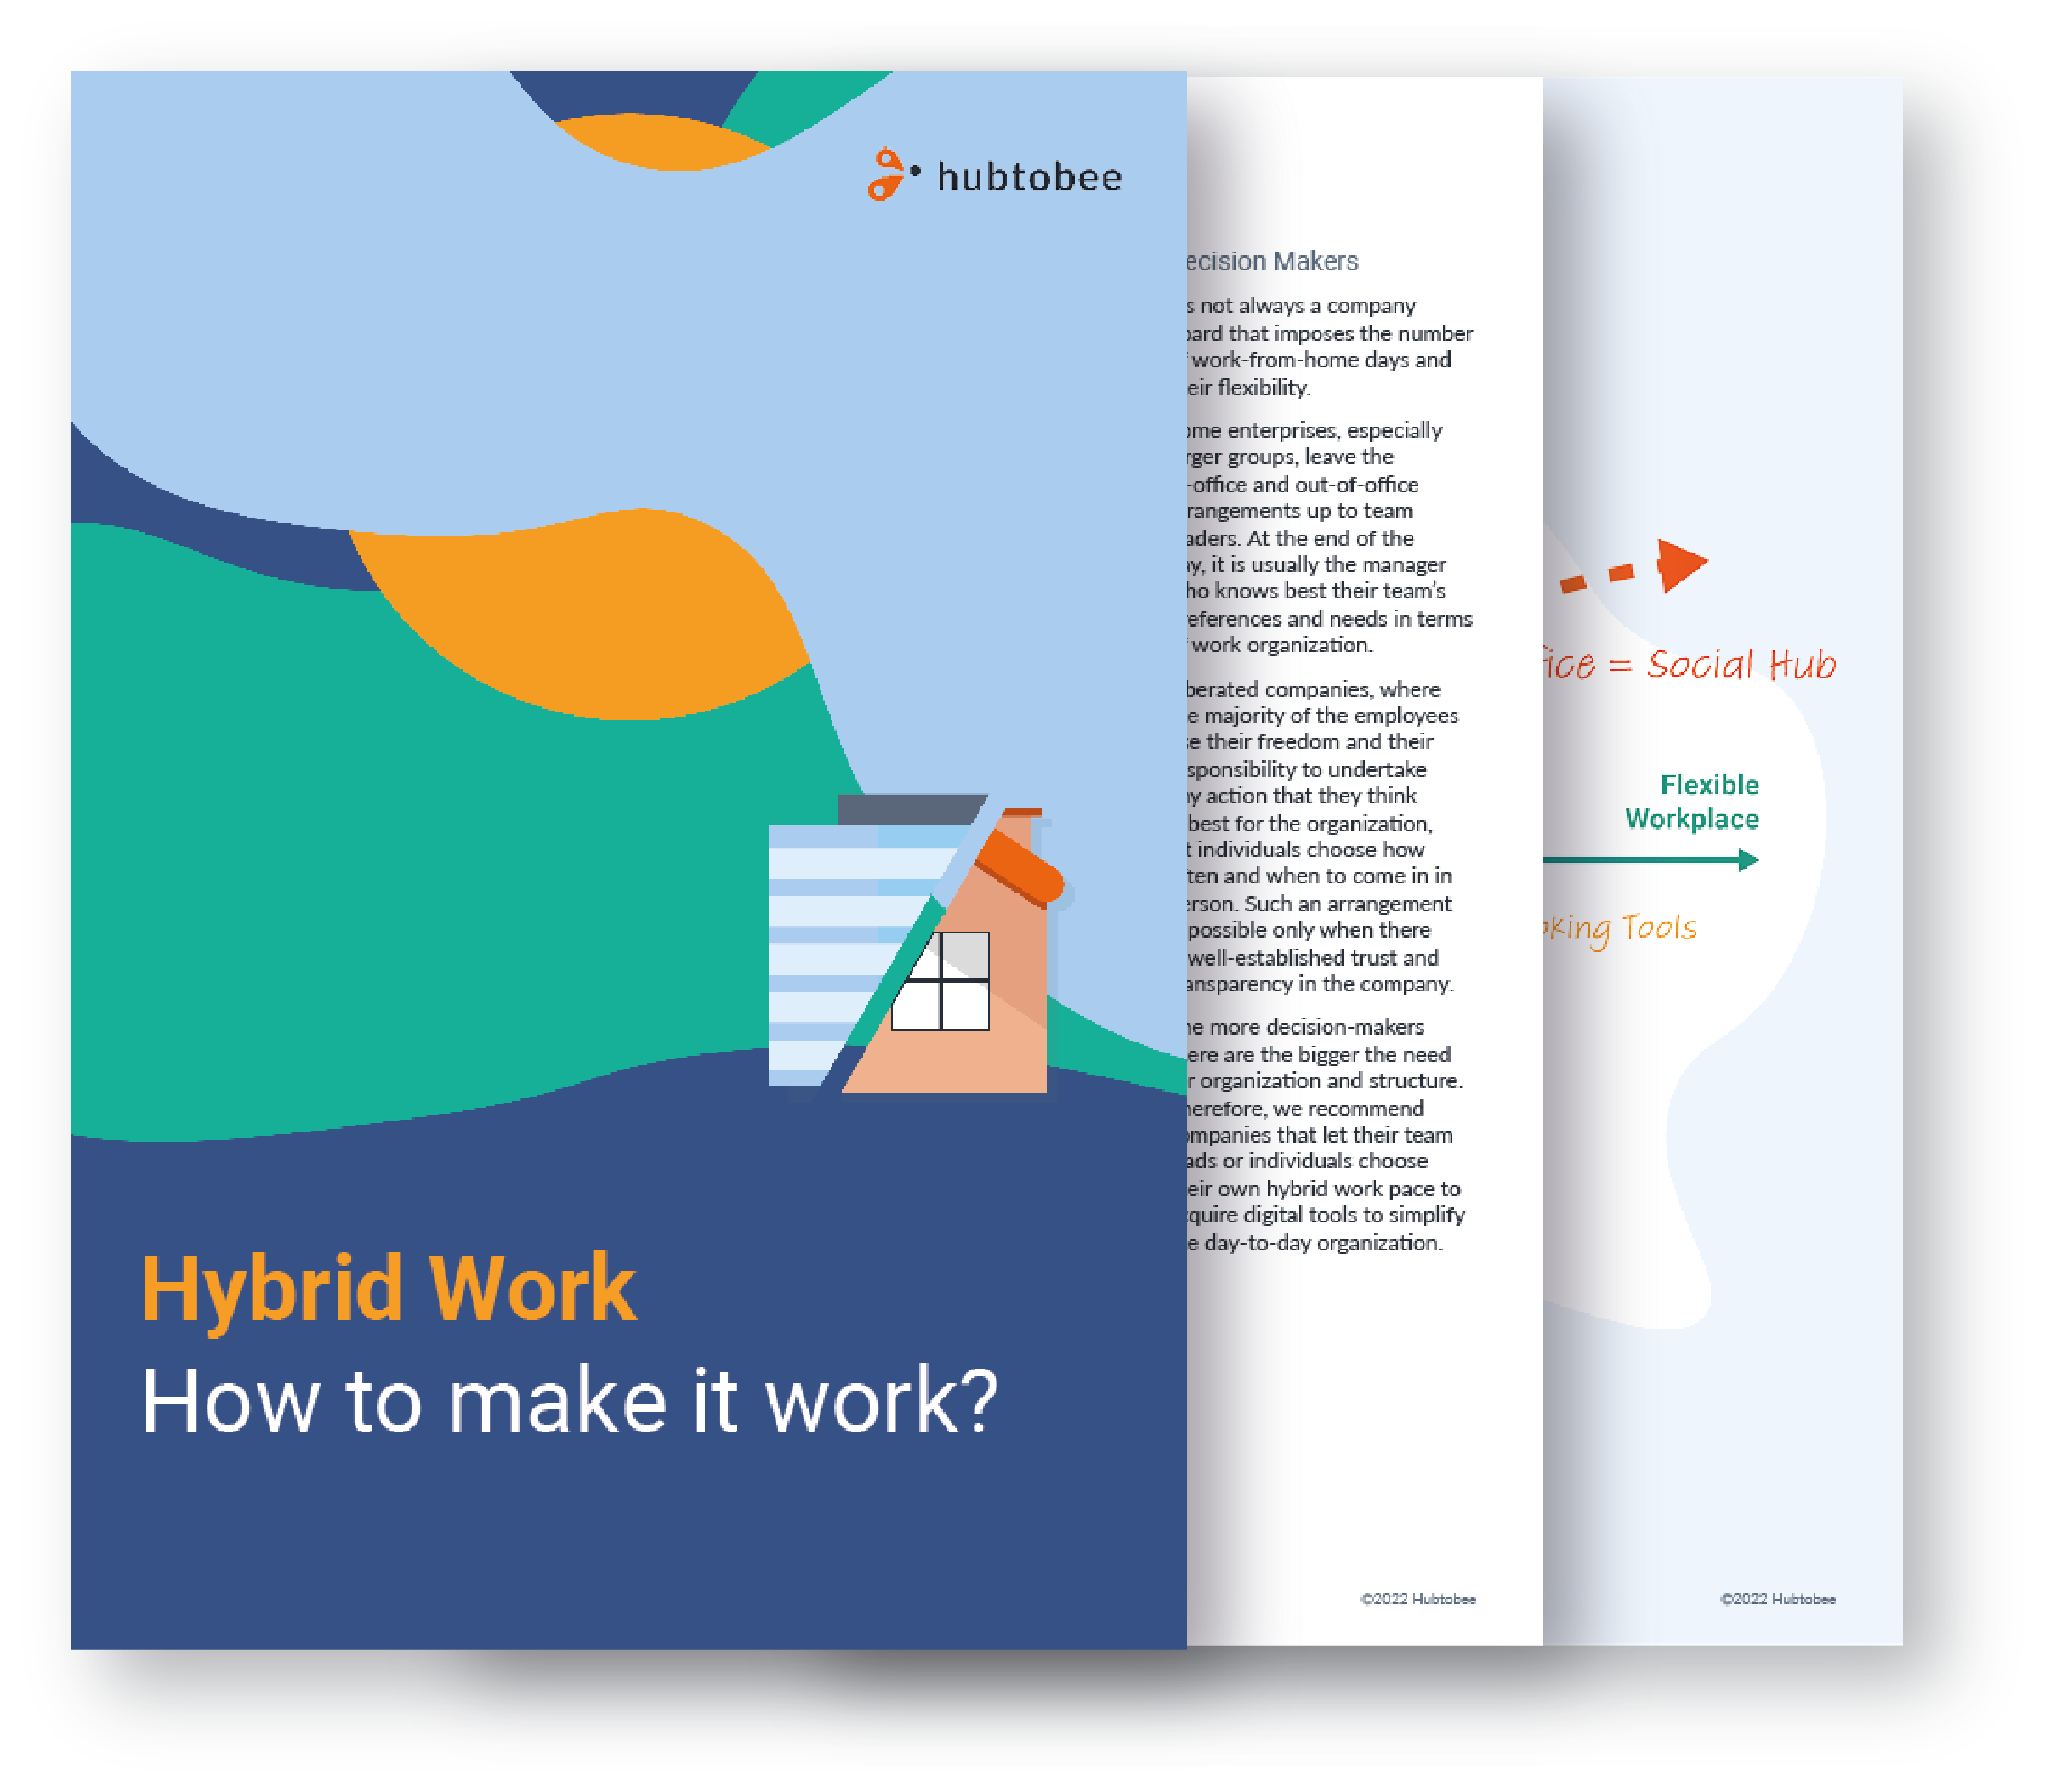 HR Study on Hybrid Work